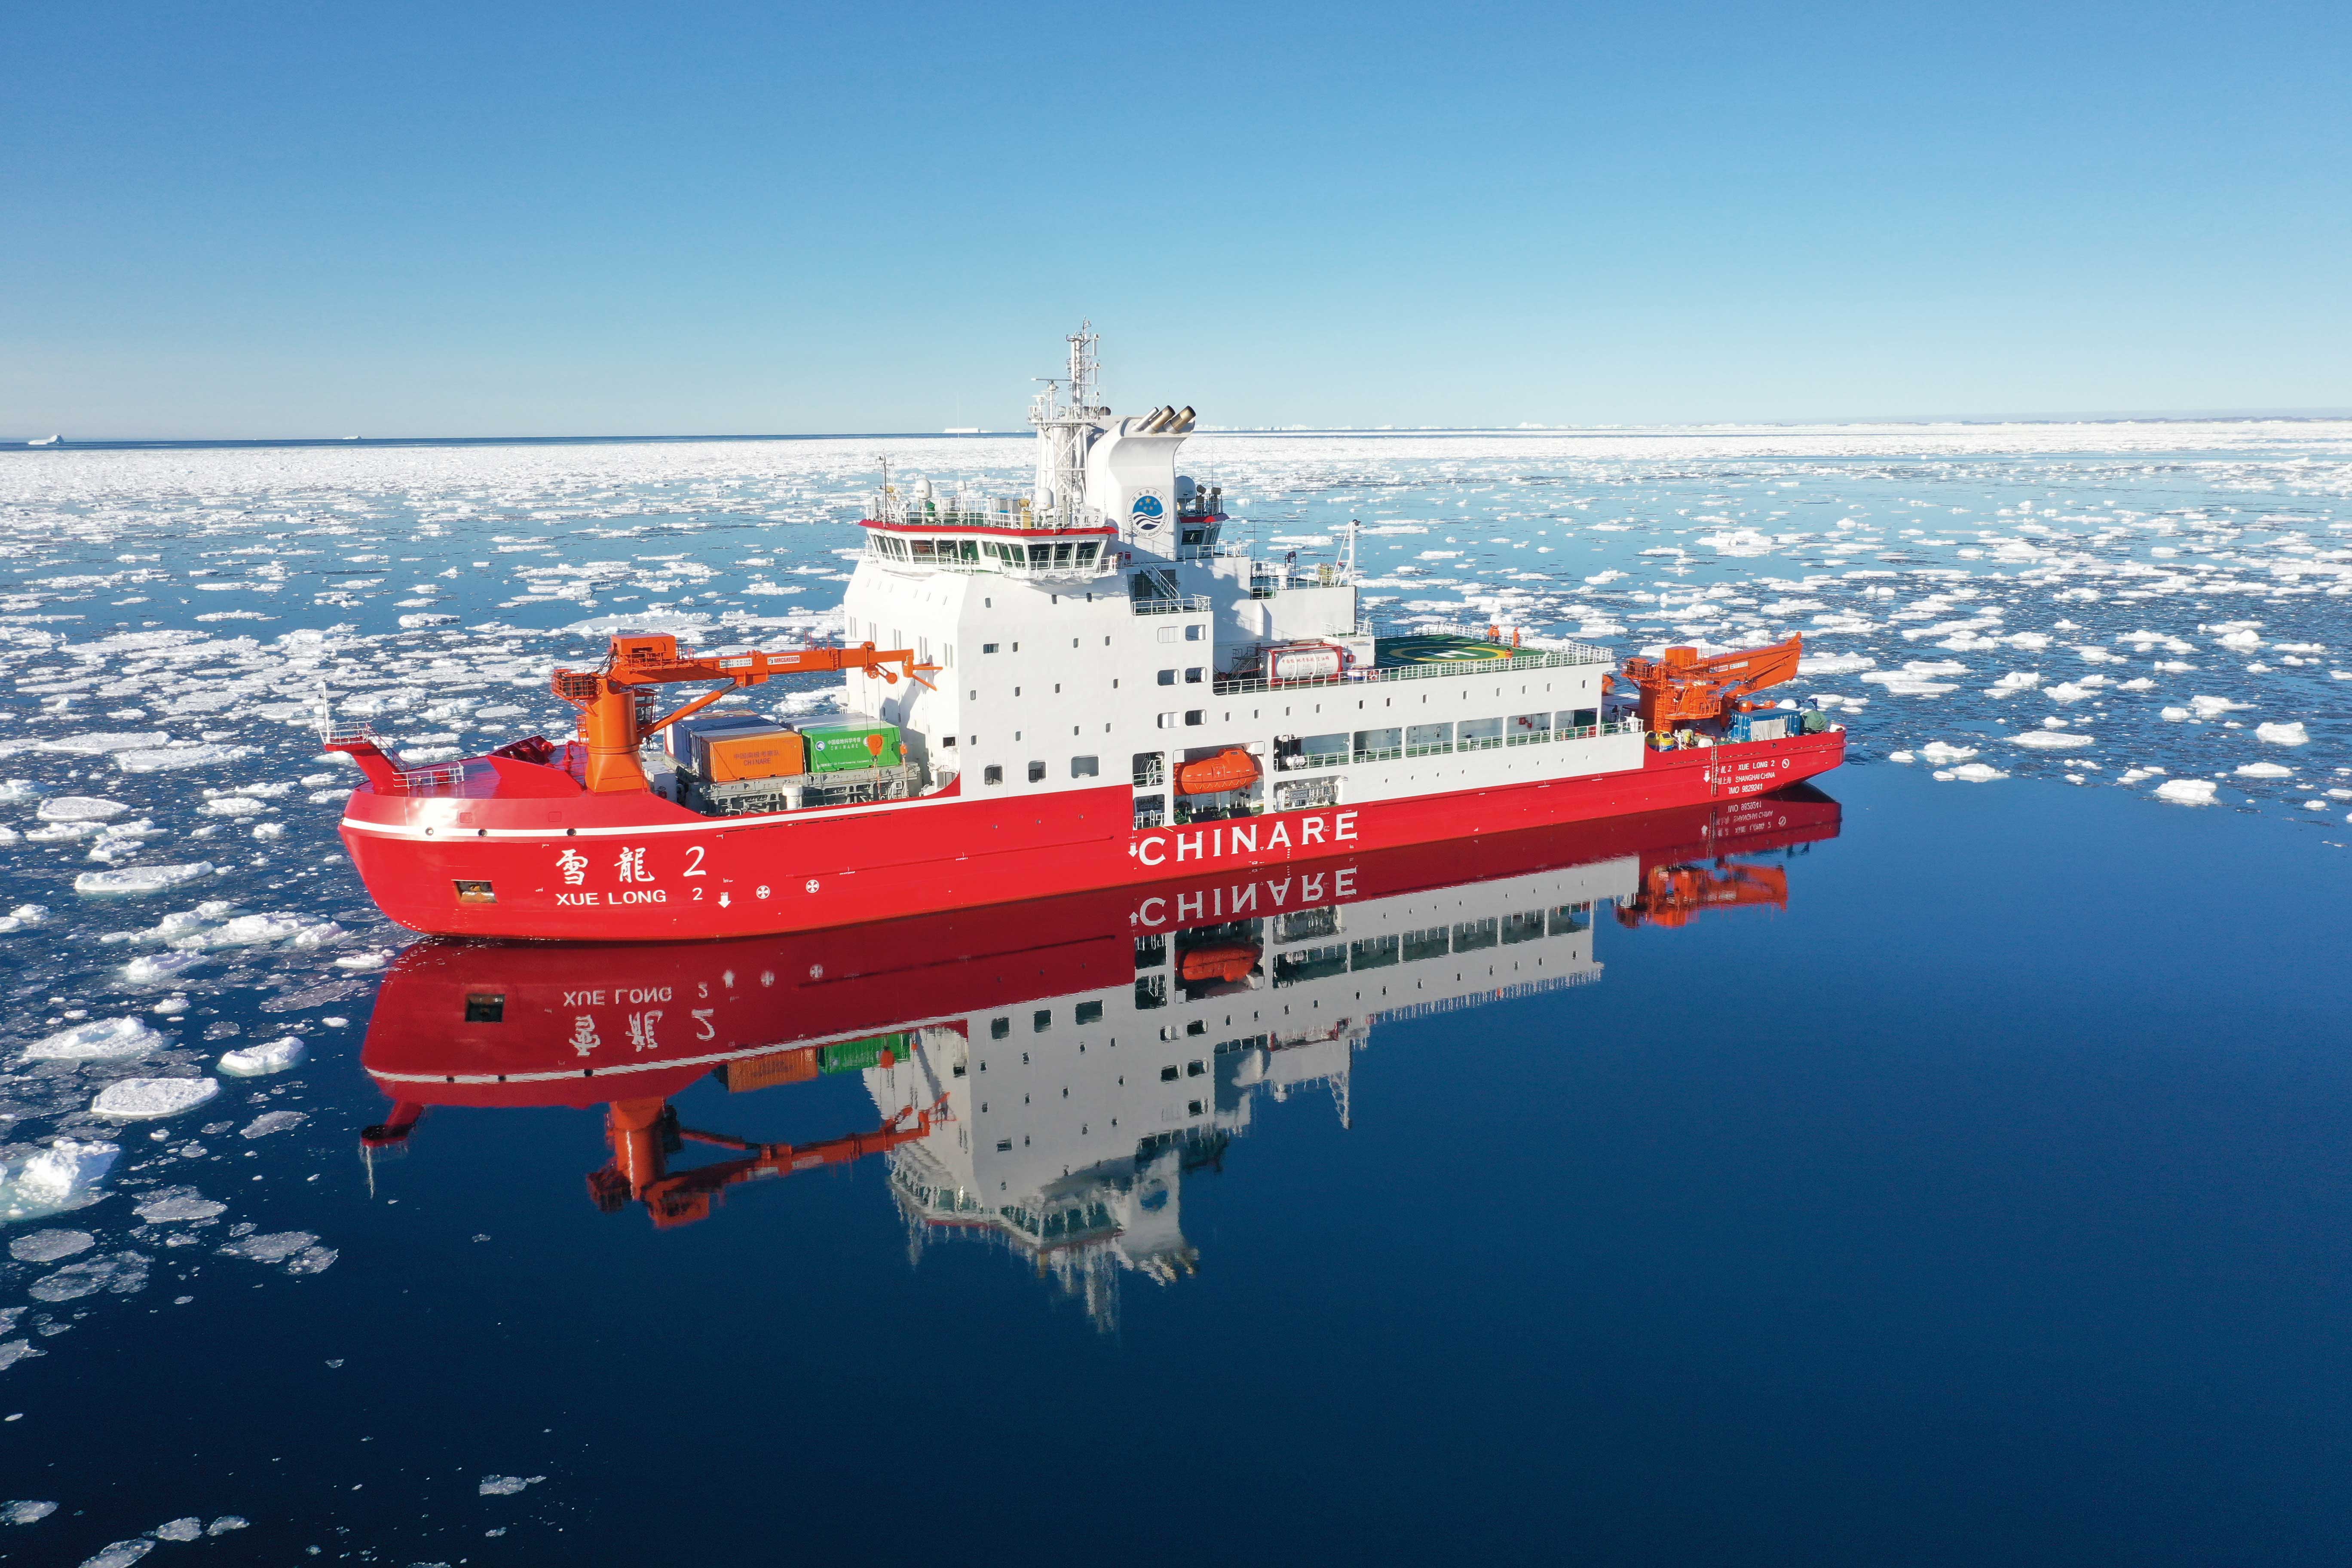 1、极地科学考察破冰船“雪龙2”号.jpg